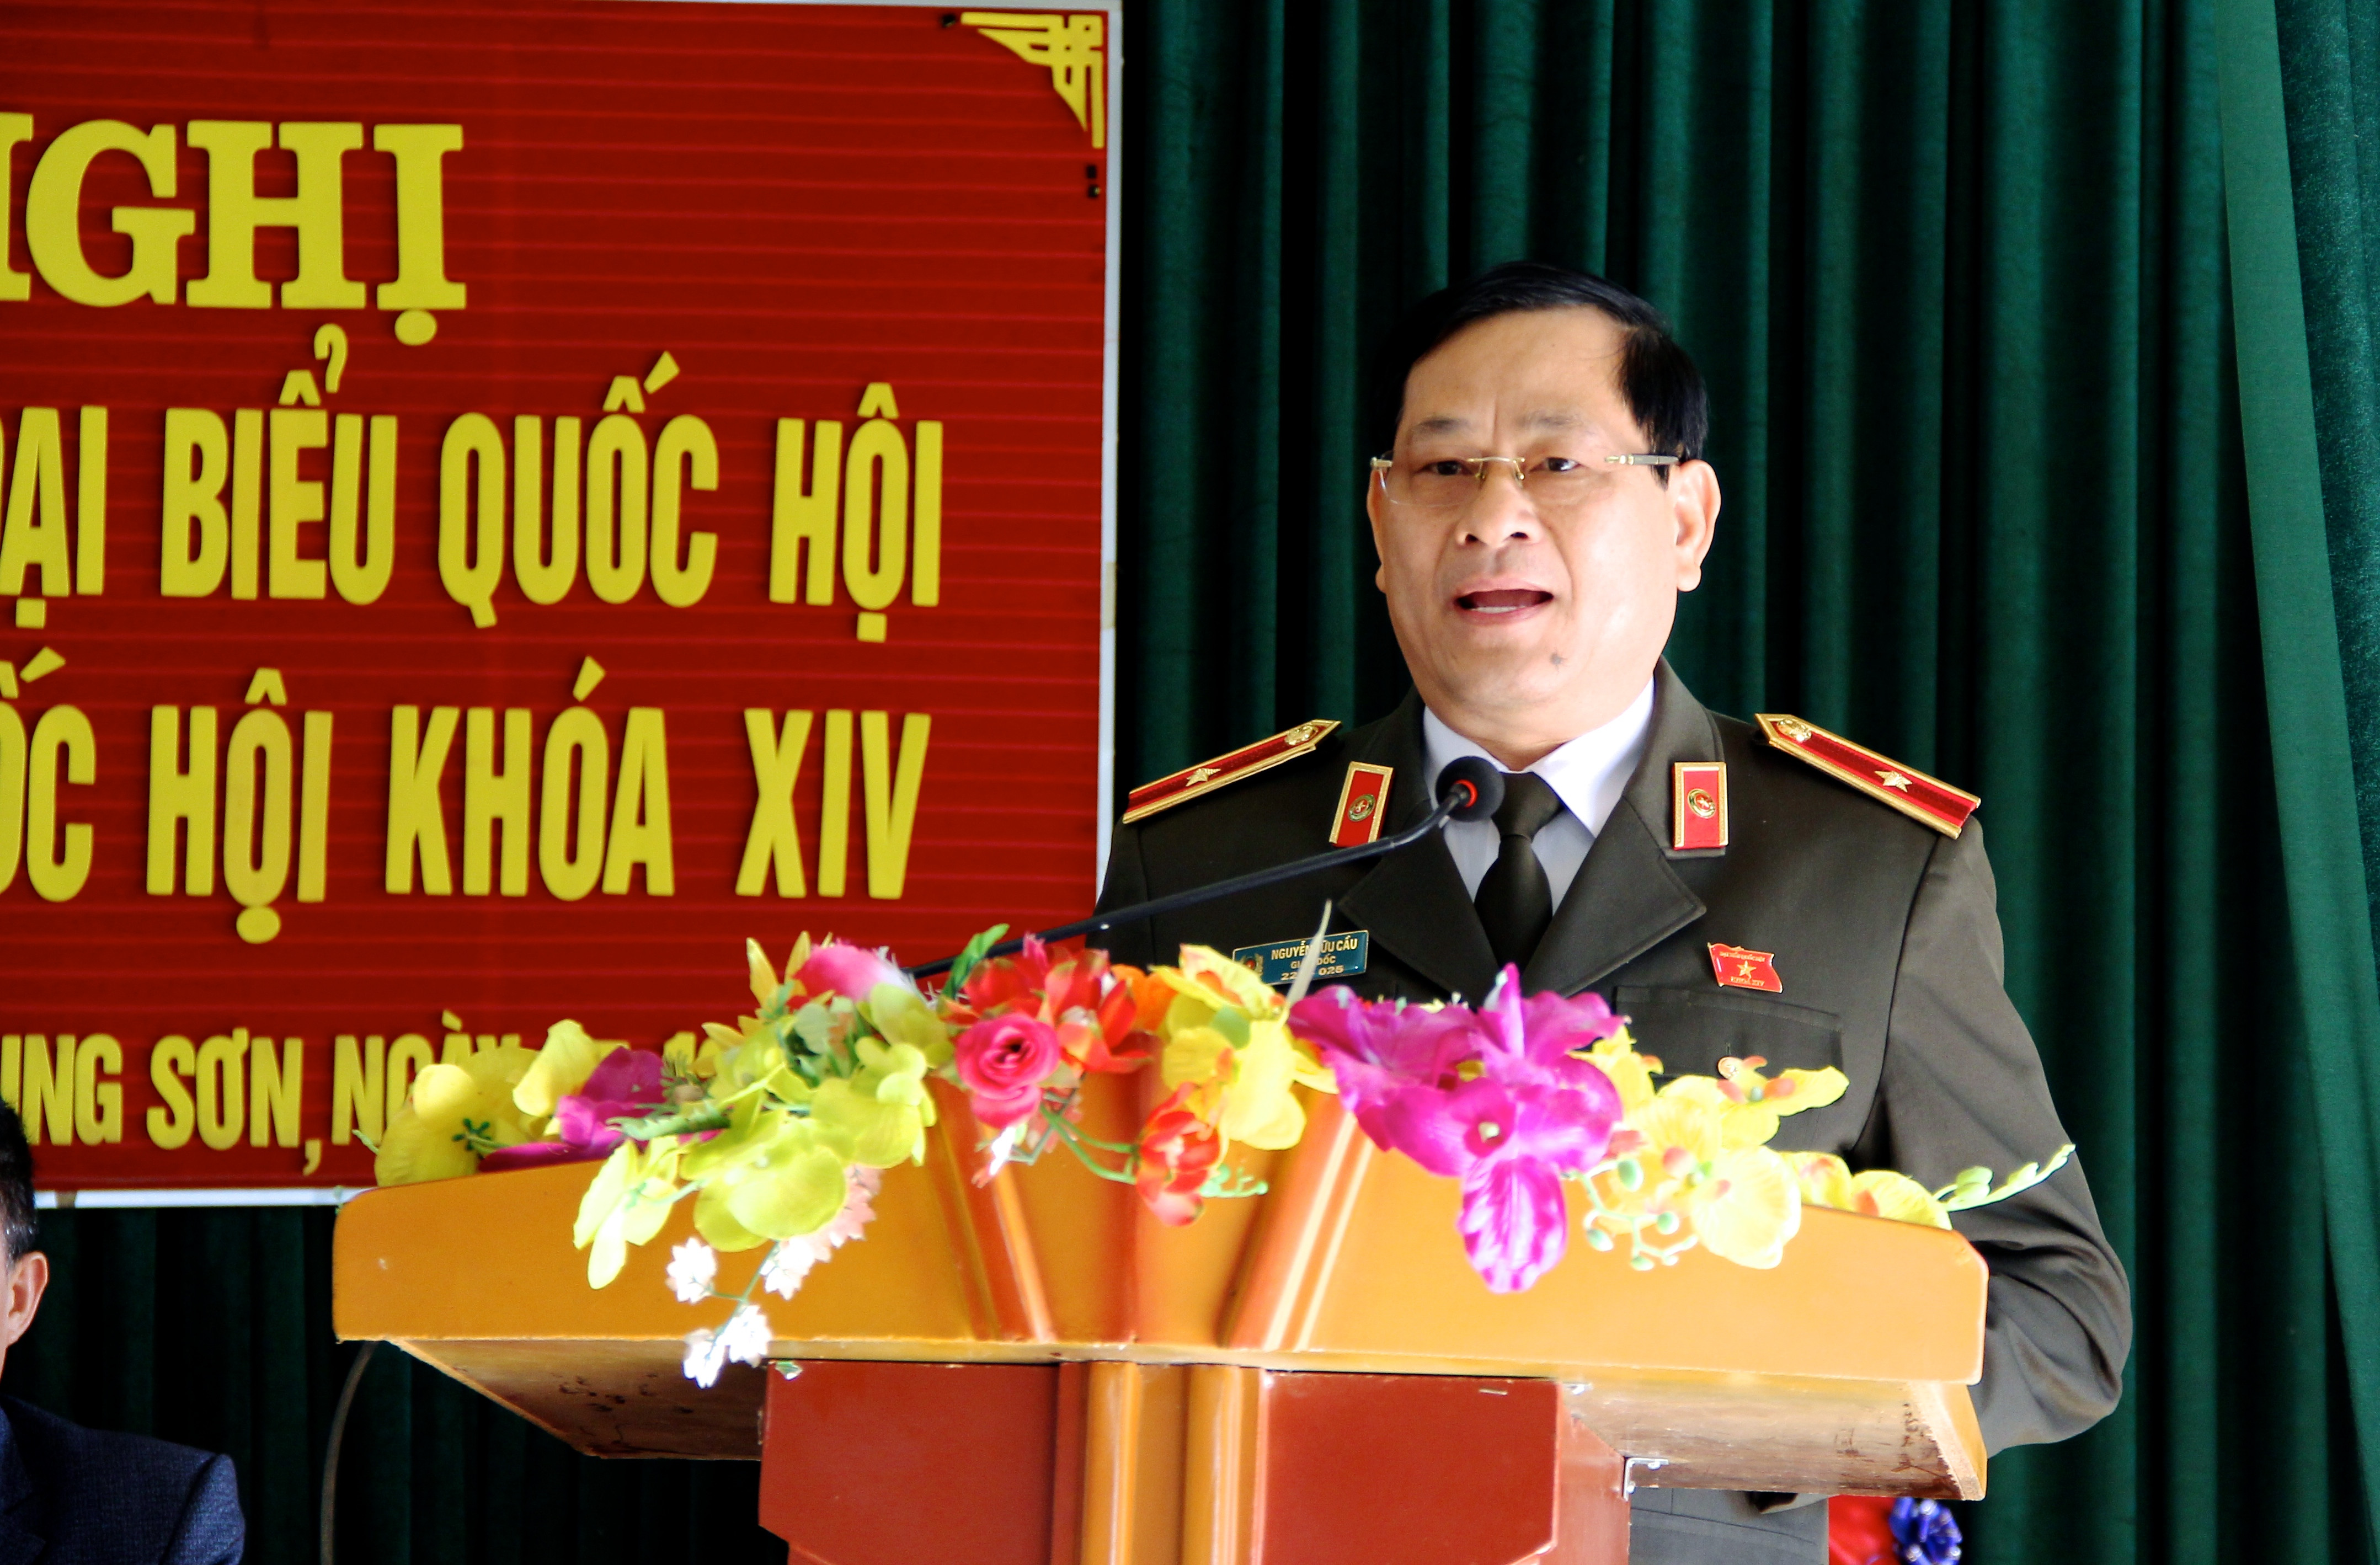 Thiếu tướng Nguyễn Hữu Cầu - Giám đốc Công an tỉnh Nghệ An trực tiếp trả lời các kiến nghị của cử tri. Ảnh: Mỹ Nga 